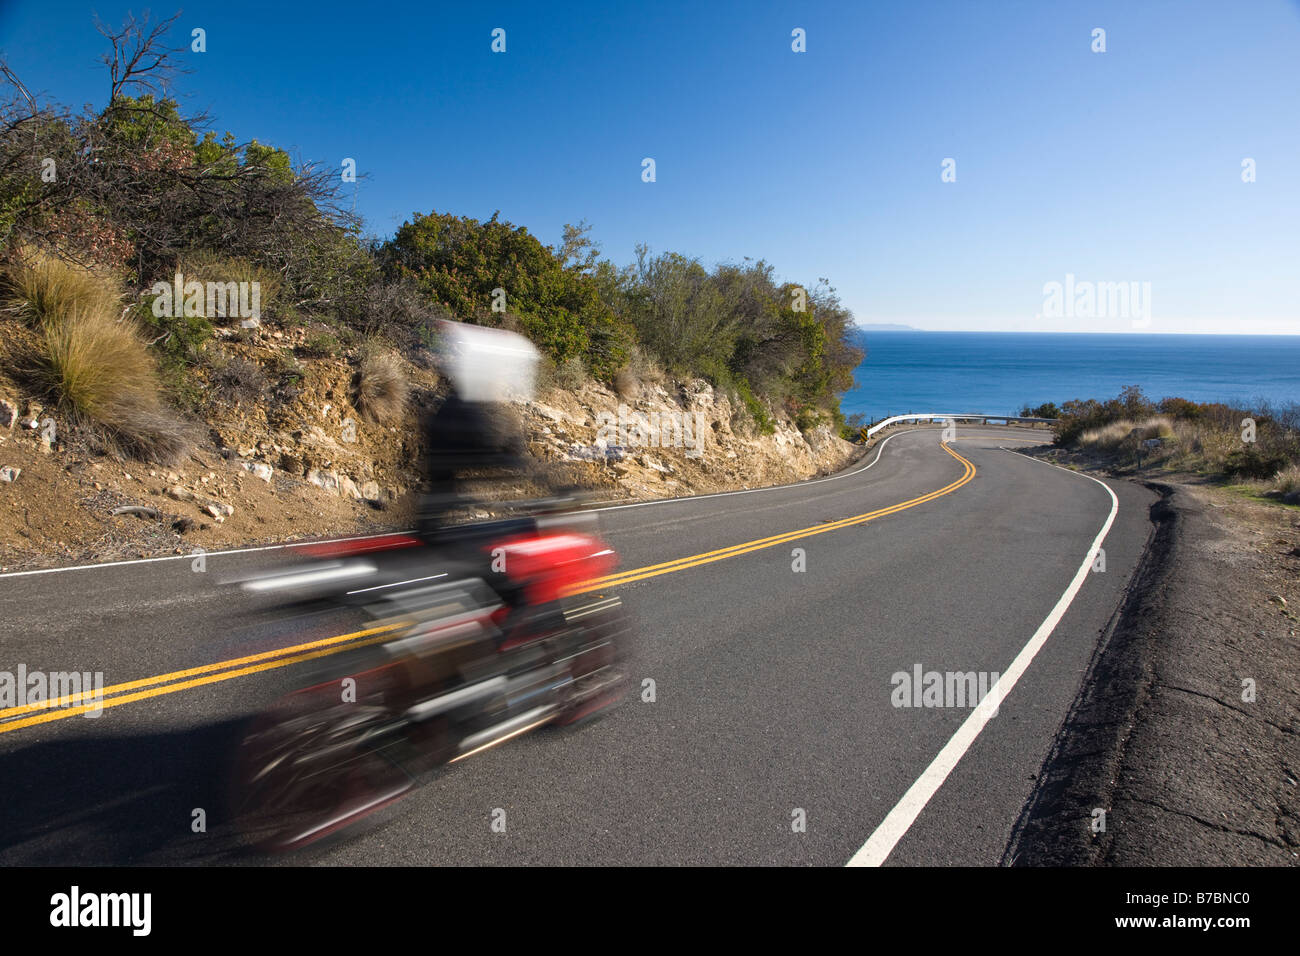 Aktion zu verwischen, der ein Motorradfahrer auf einer Straße in der Nähe von RT. 1 und Malibu, Kalifornien, USA Stockfoto